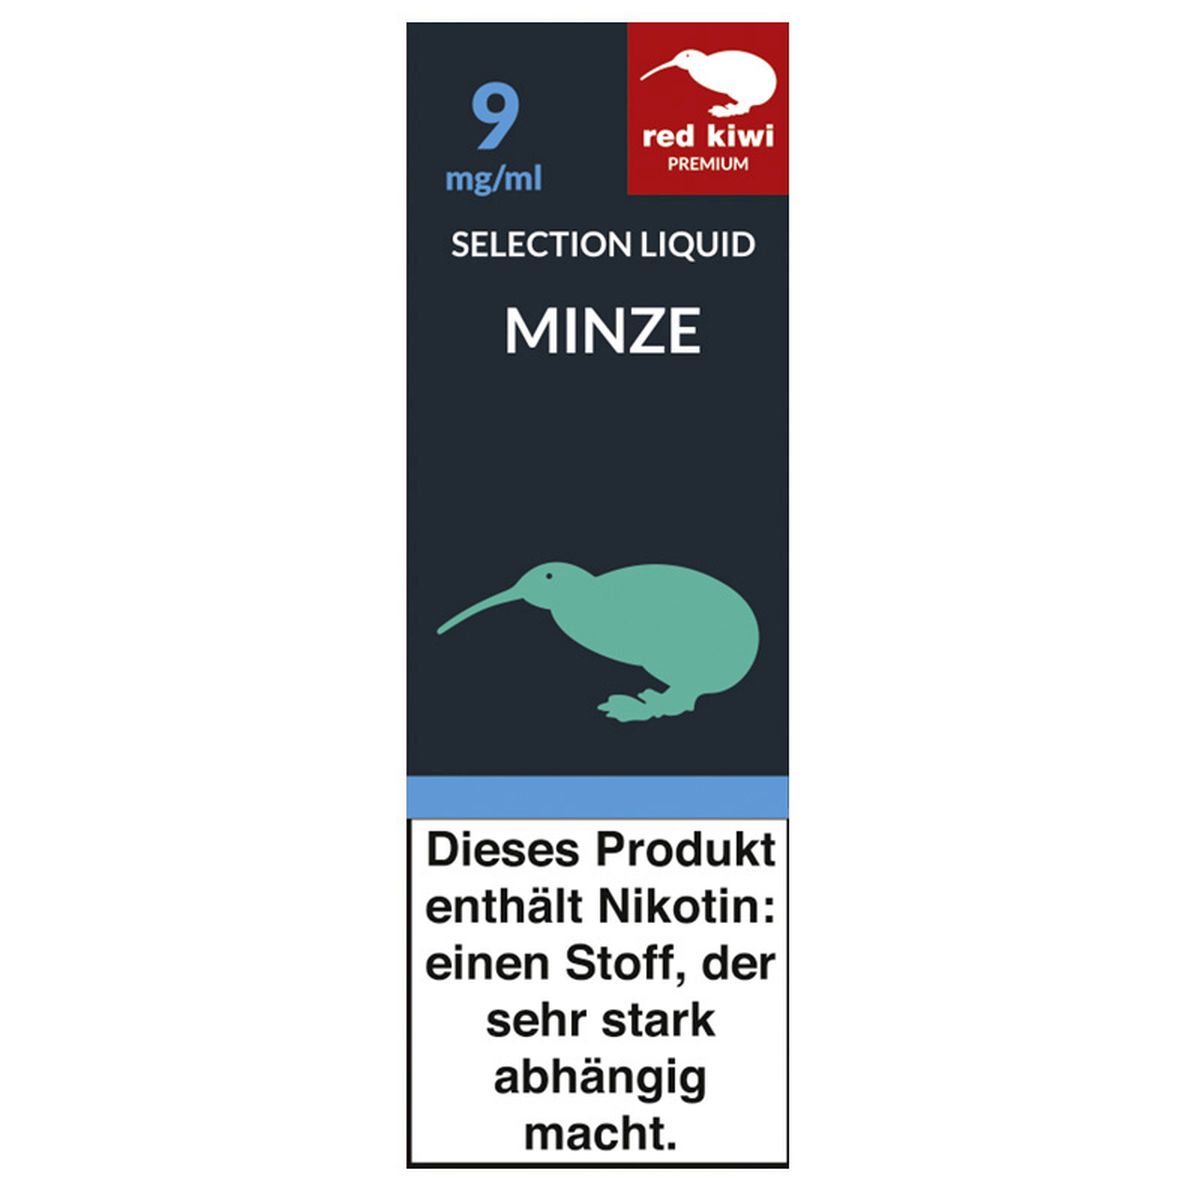 Red Kiwi Red Kiwi eLiquid Selection Minze 9mg Nikotin/ml bei www.Tabakring.de kaufen